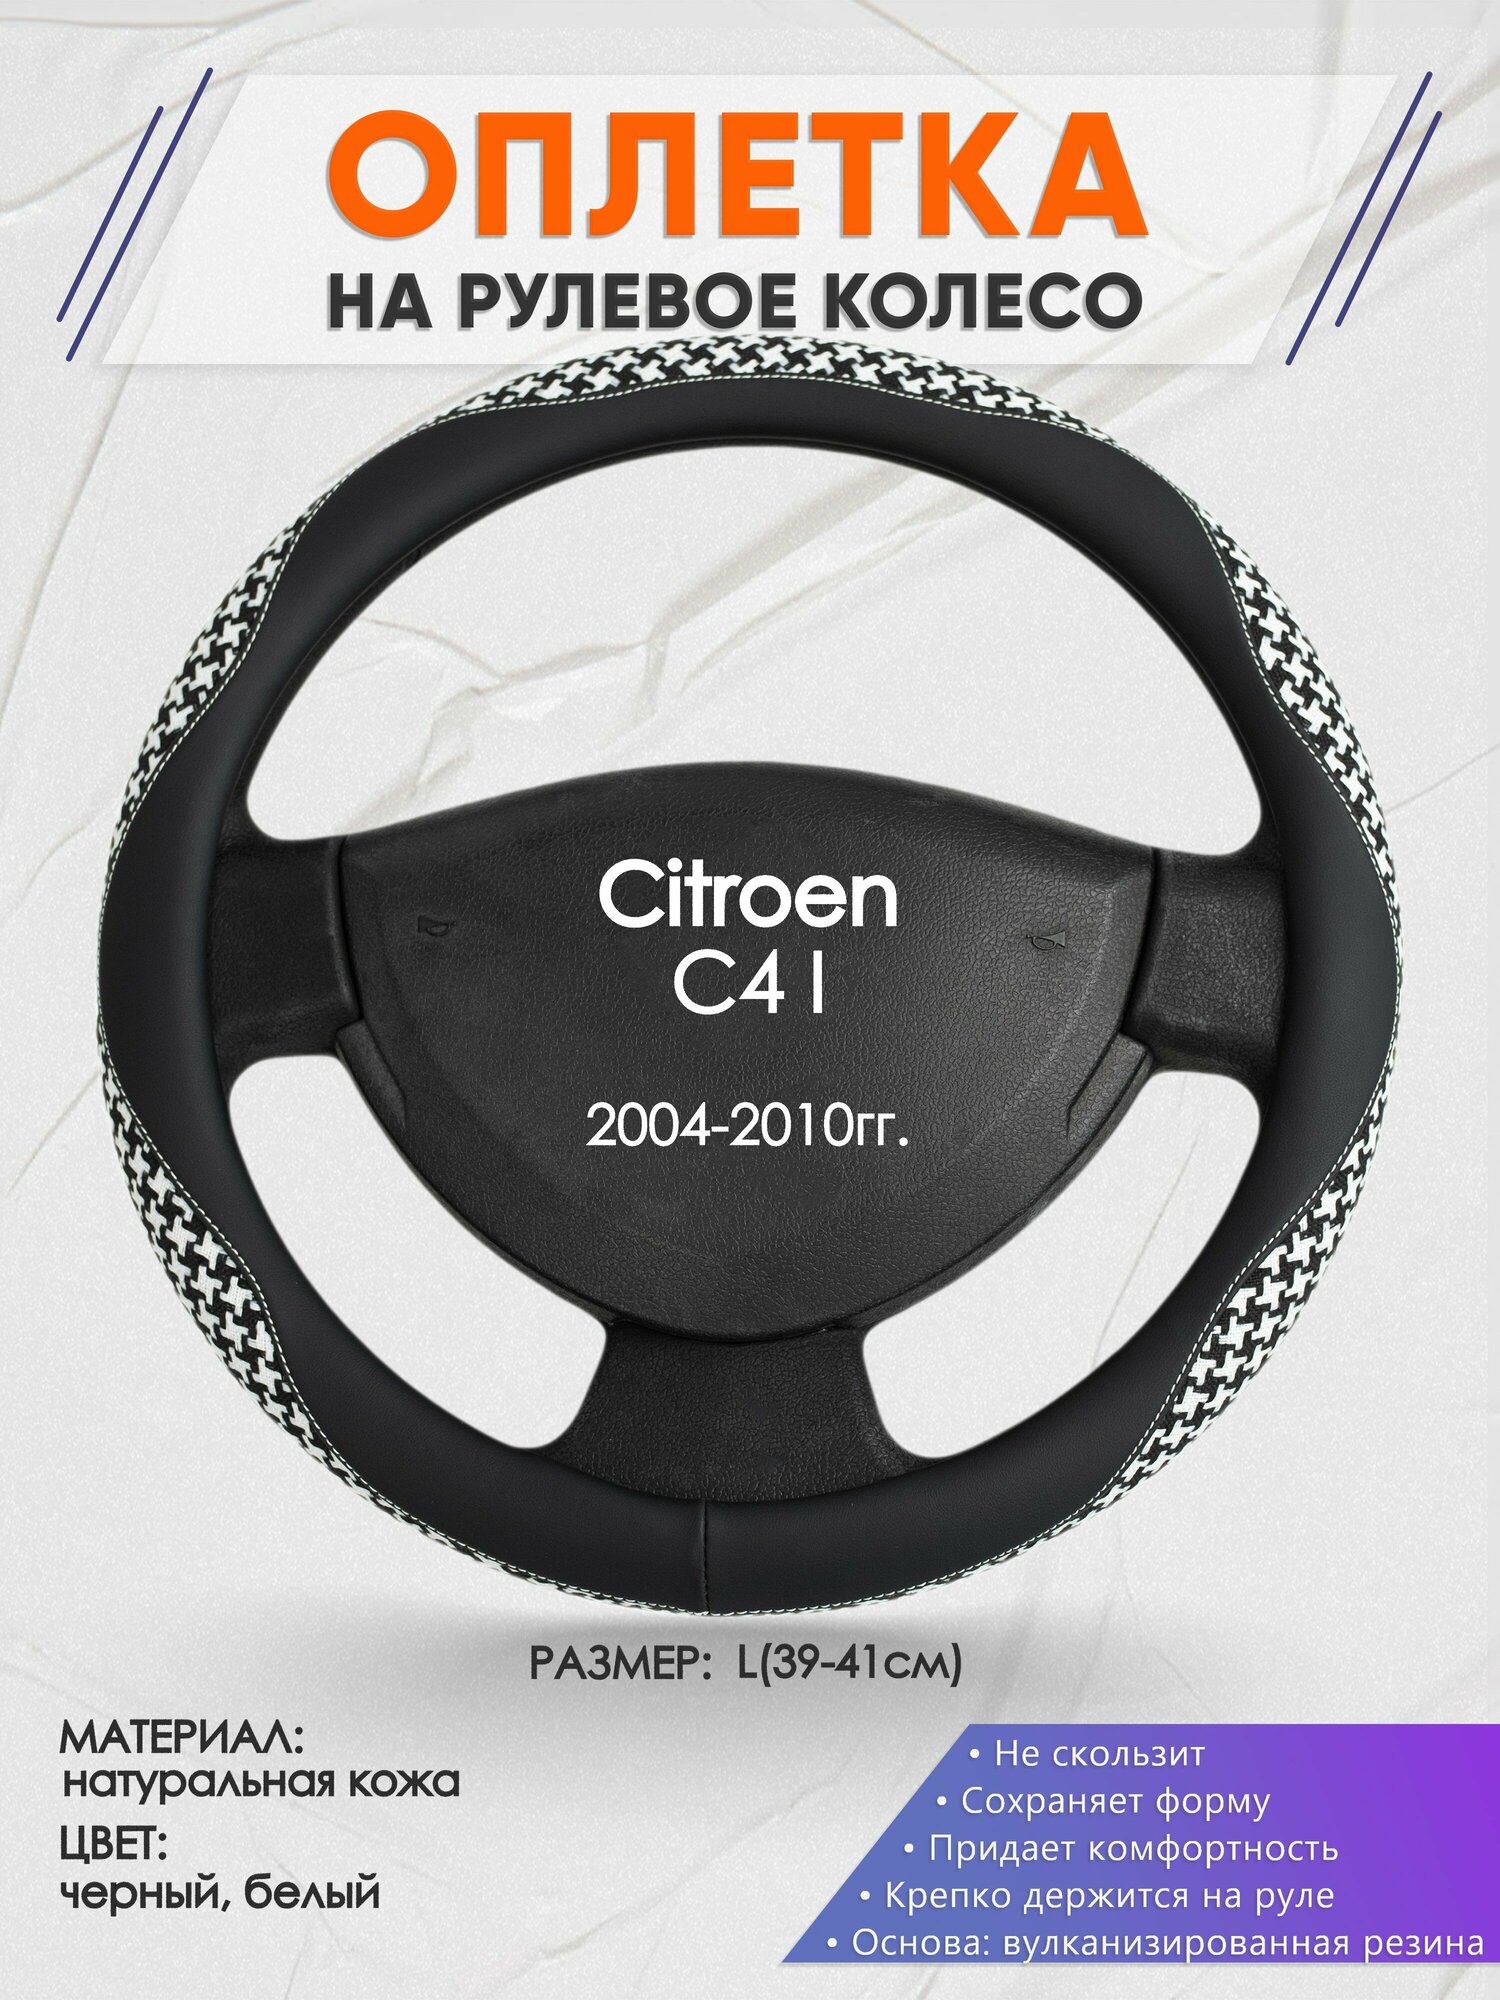 Оплетка на руль для Citroen C4 I(Ситроен С4 1 поколение) 2004-2010, L(39-41см), Натуральная кожа 21